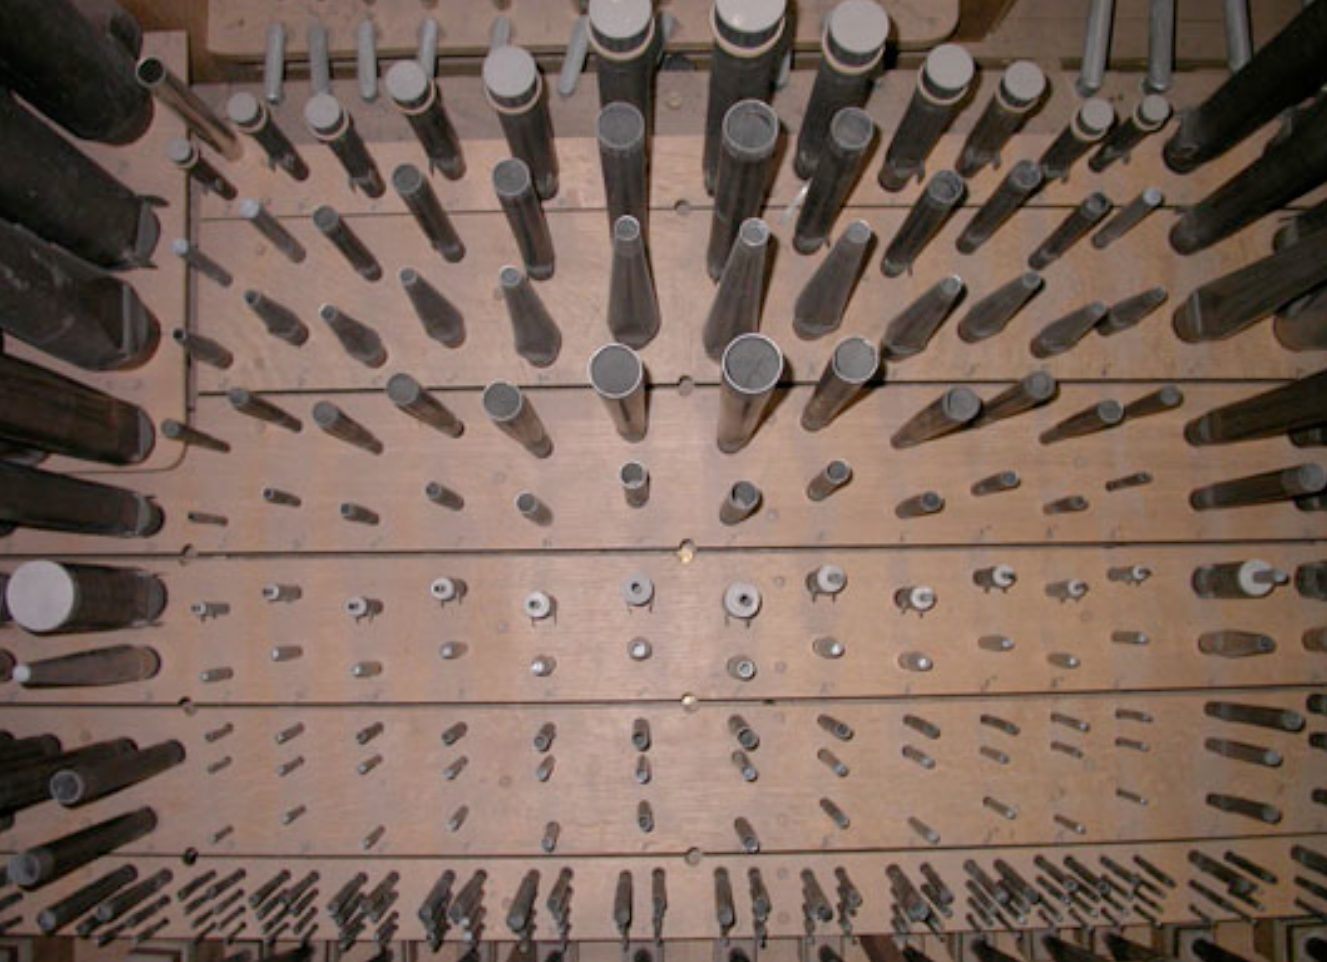 Abbildung 12 - Ansicht Feld mit Orgelpfeifen von oben betrachtet